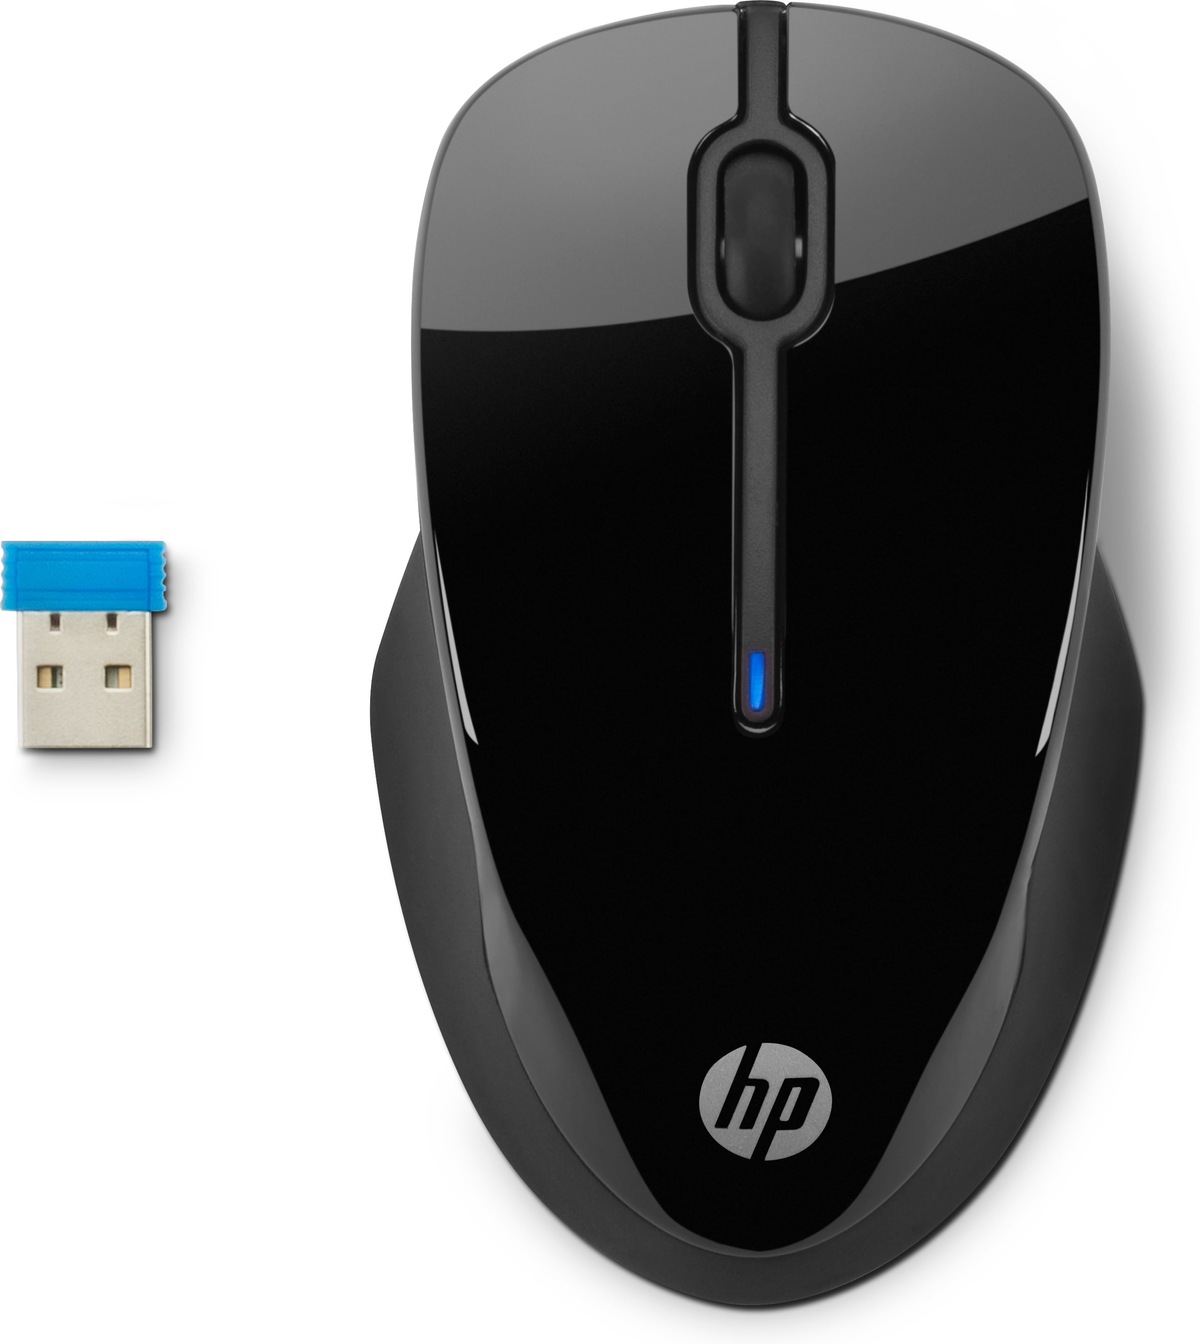 HP HP 250 schwarz Eingabegeräte Wireless black Maus